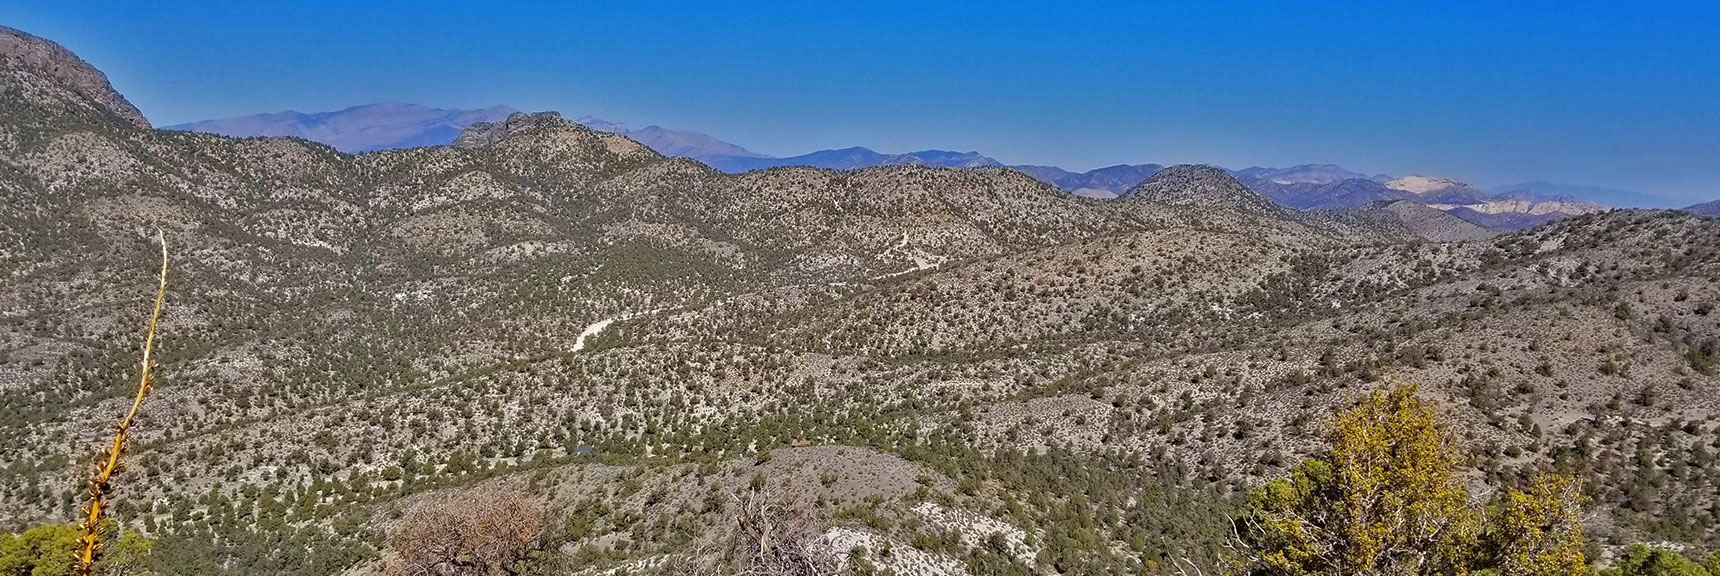 Northern Hills | Potosi Mountain | Spring Mountains, Nevada